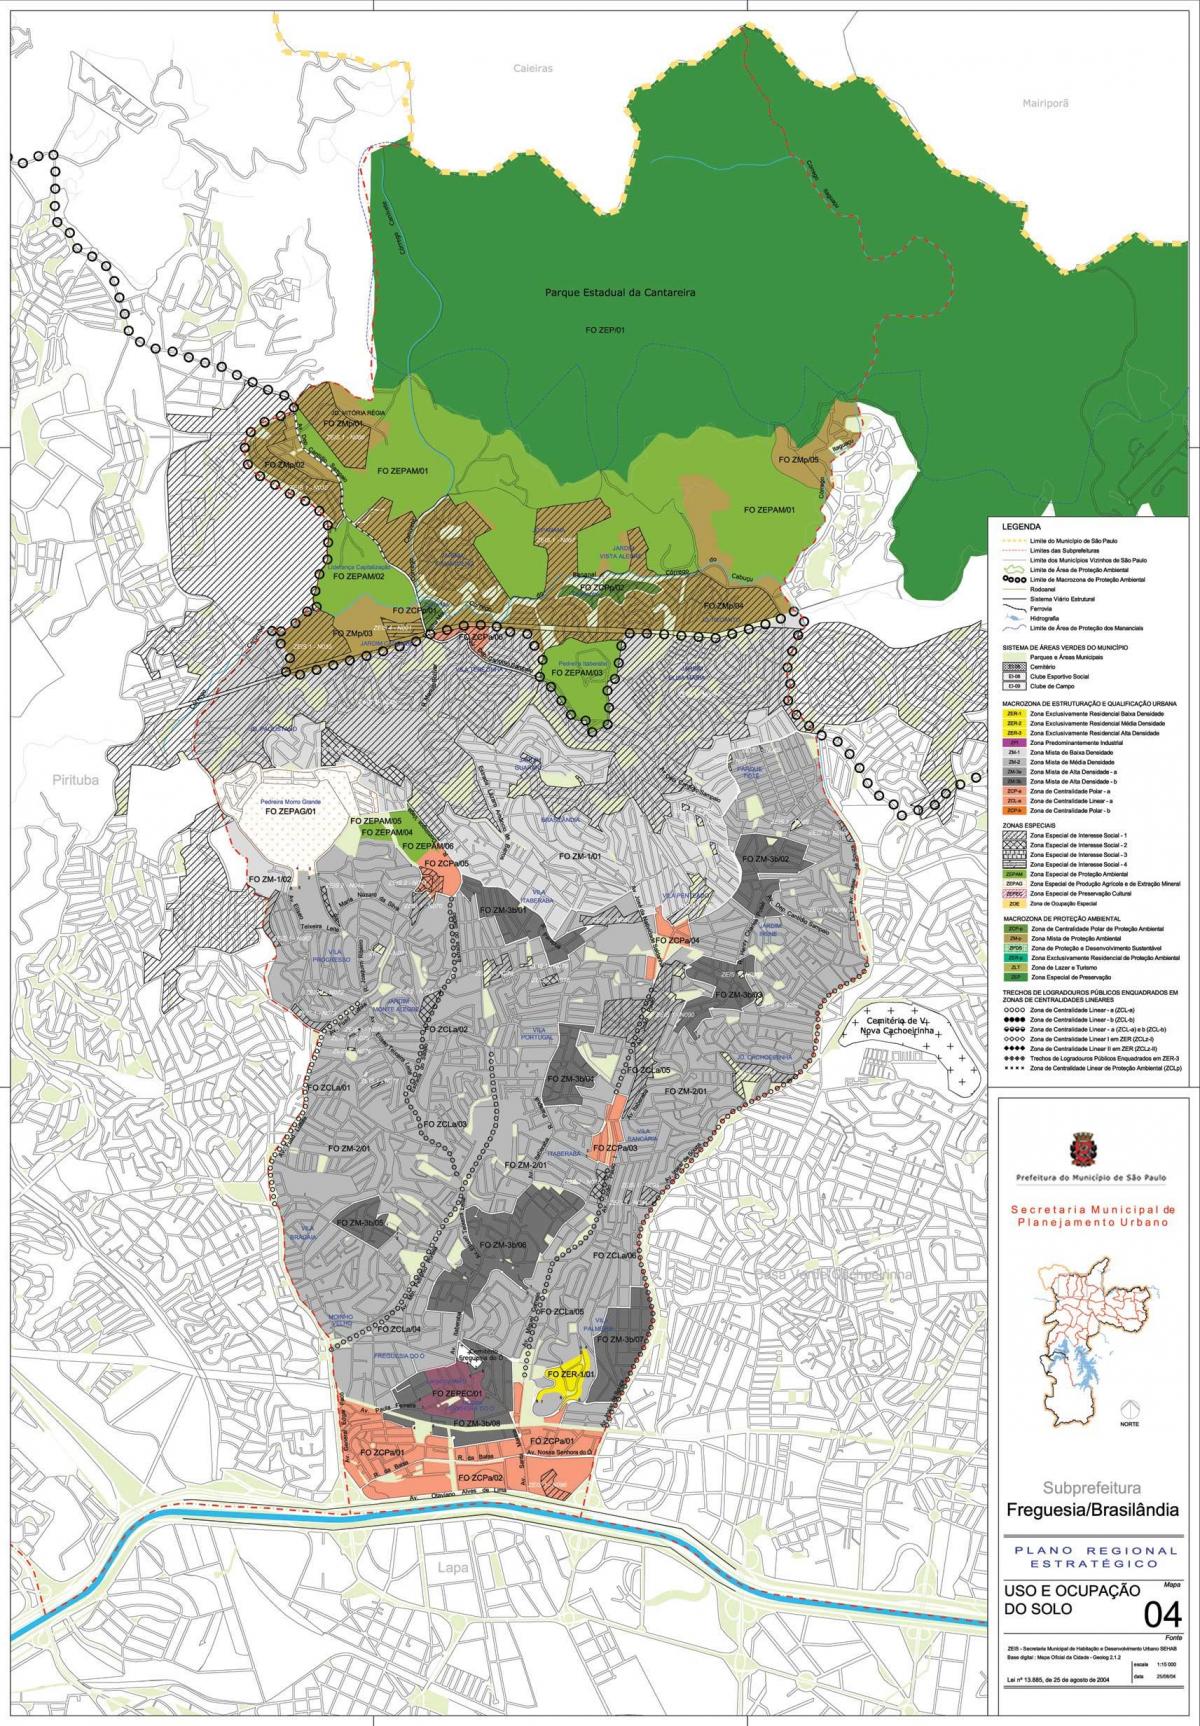 Peta dari Freguesia do Ó Sao Paulo - Pendudukan tanah